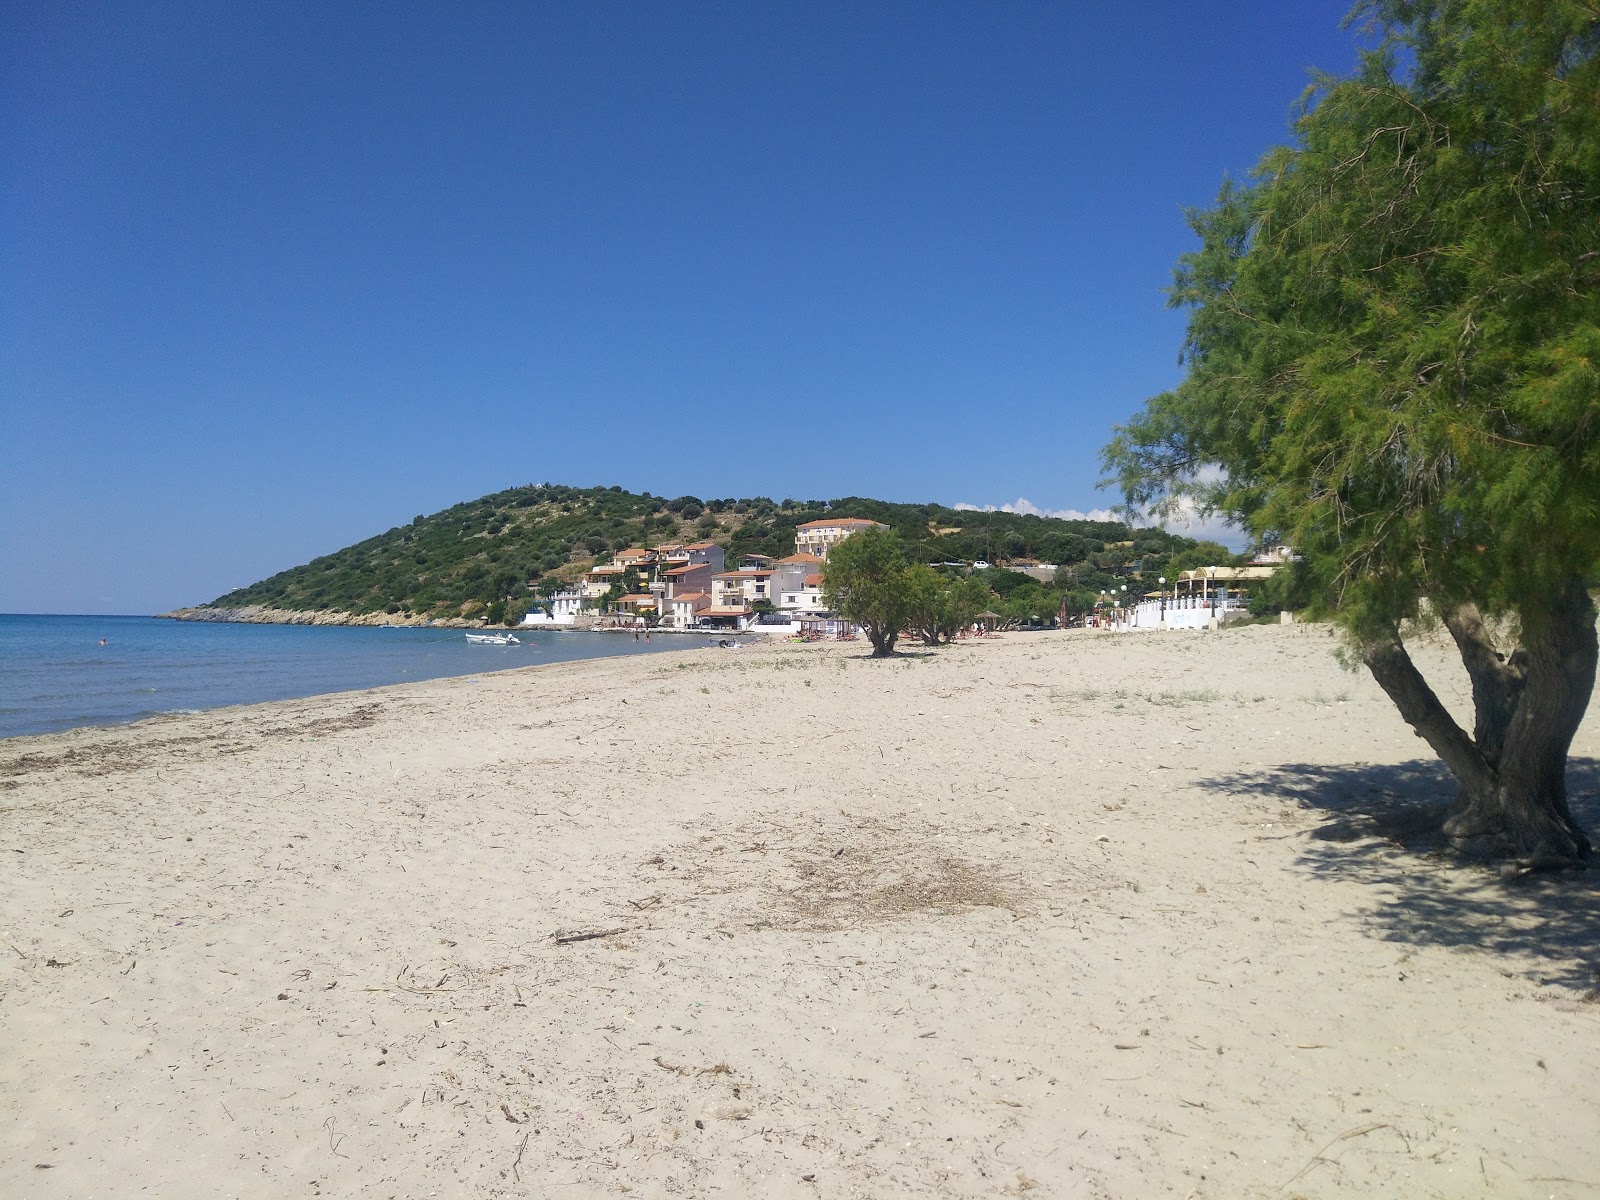 Psili Ammos beach photo #8